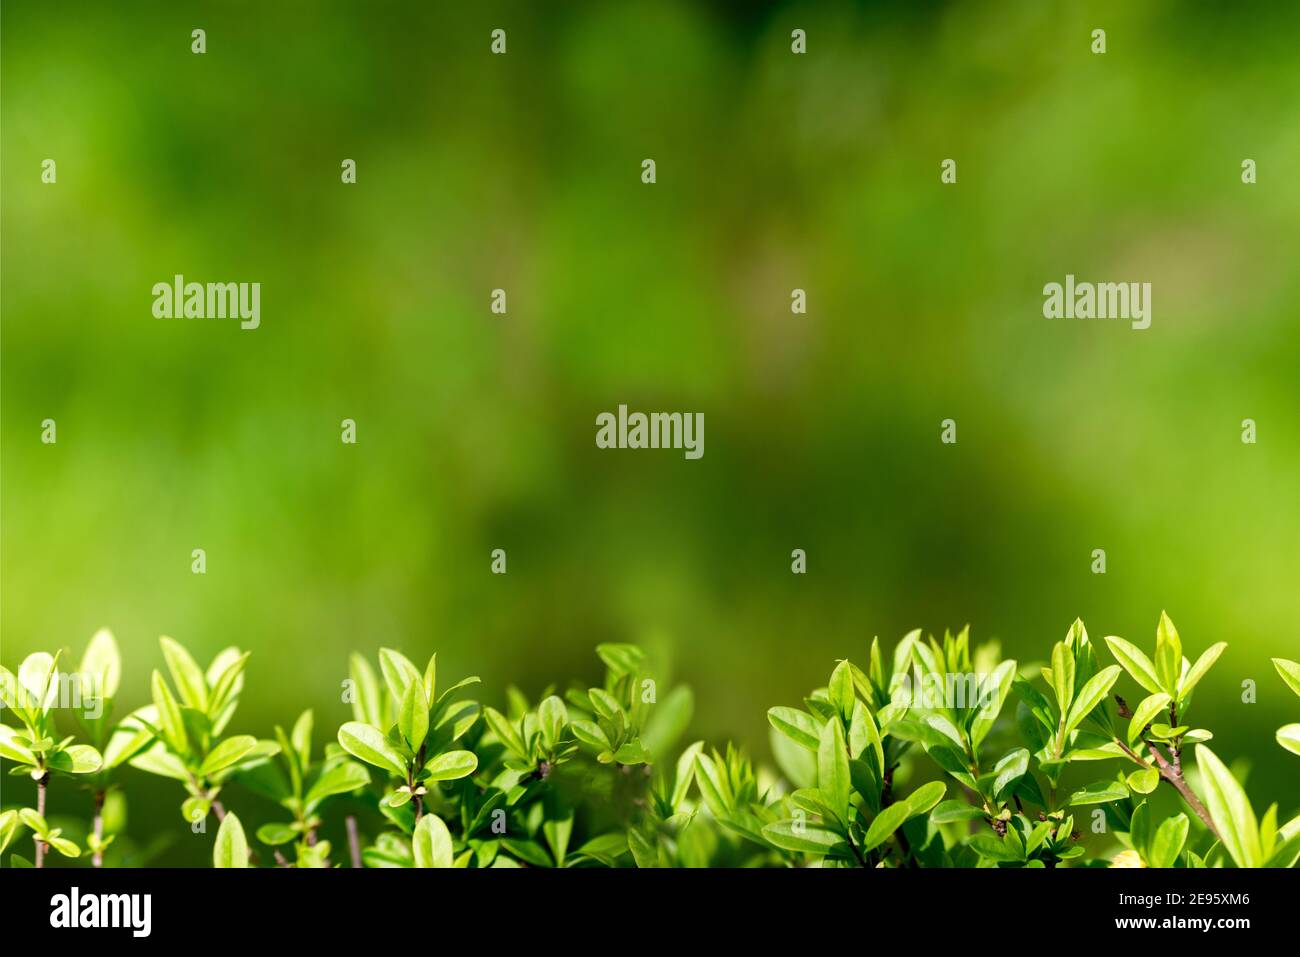 Hintergrund für Design mit Strauchblättern. Schöner Hintergrund mit viel Grün. Nture Hintergrund.Nahtloser Bannerrand Stockfoto